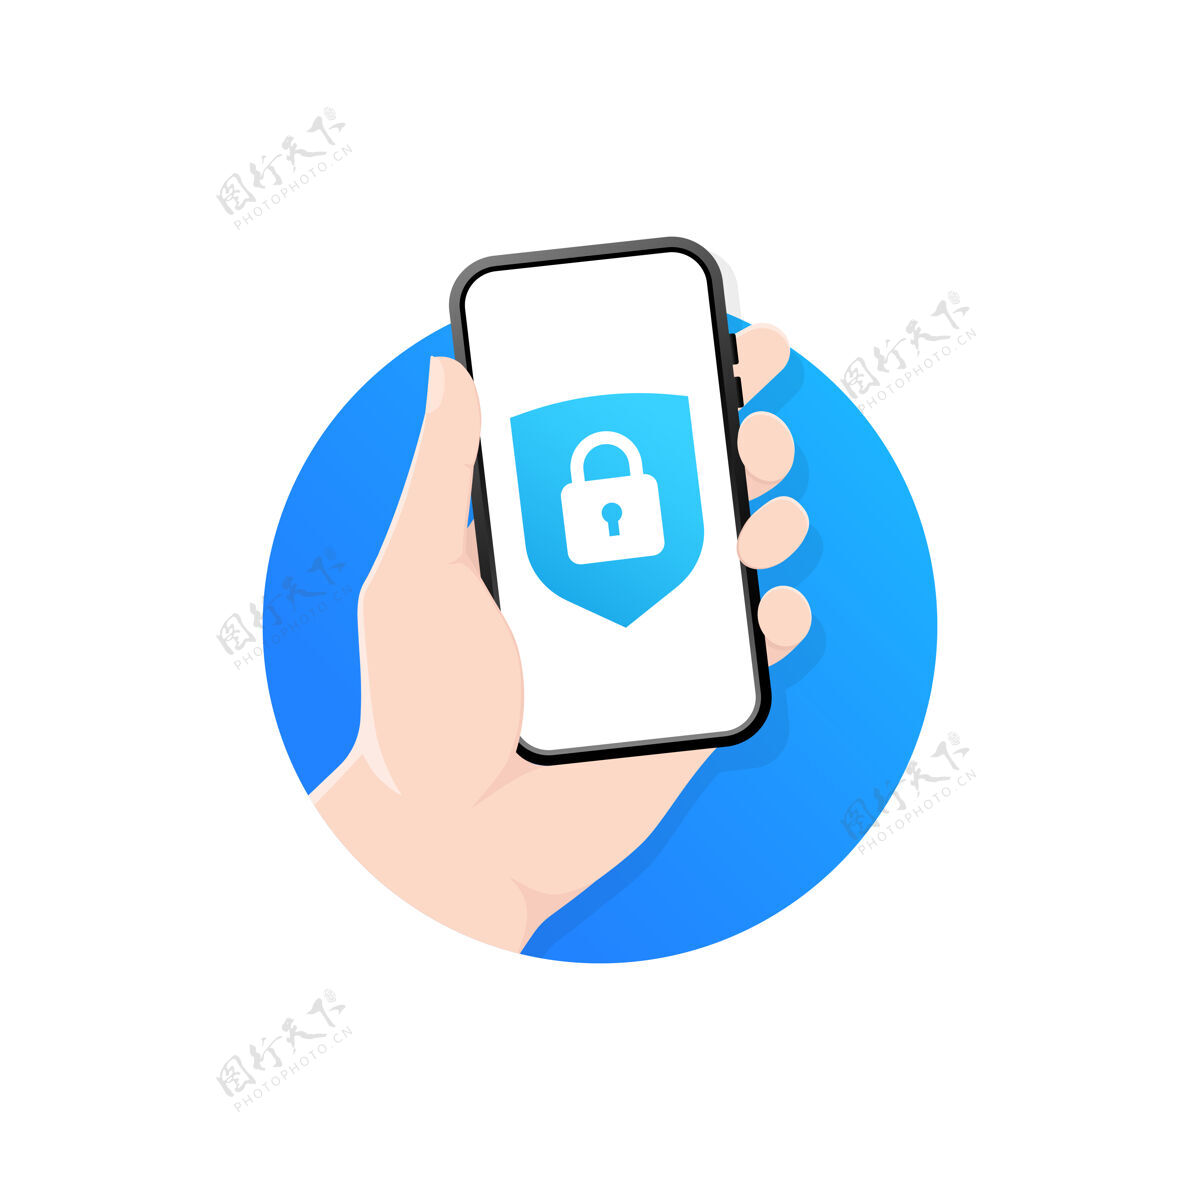 解锁手拿着一个智能手机在屏幕上锁定图标登录隐私个人